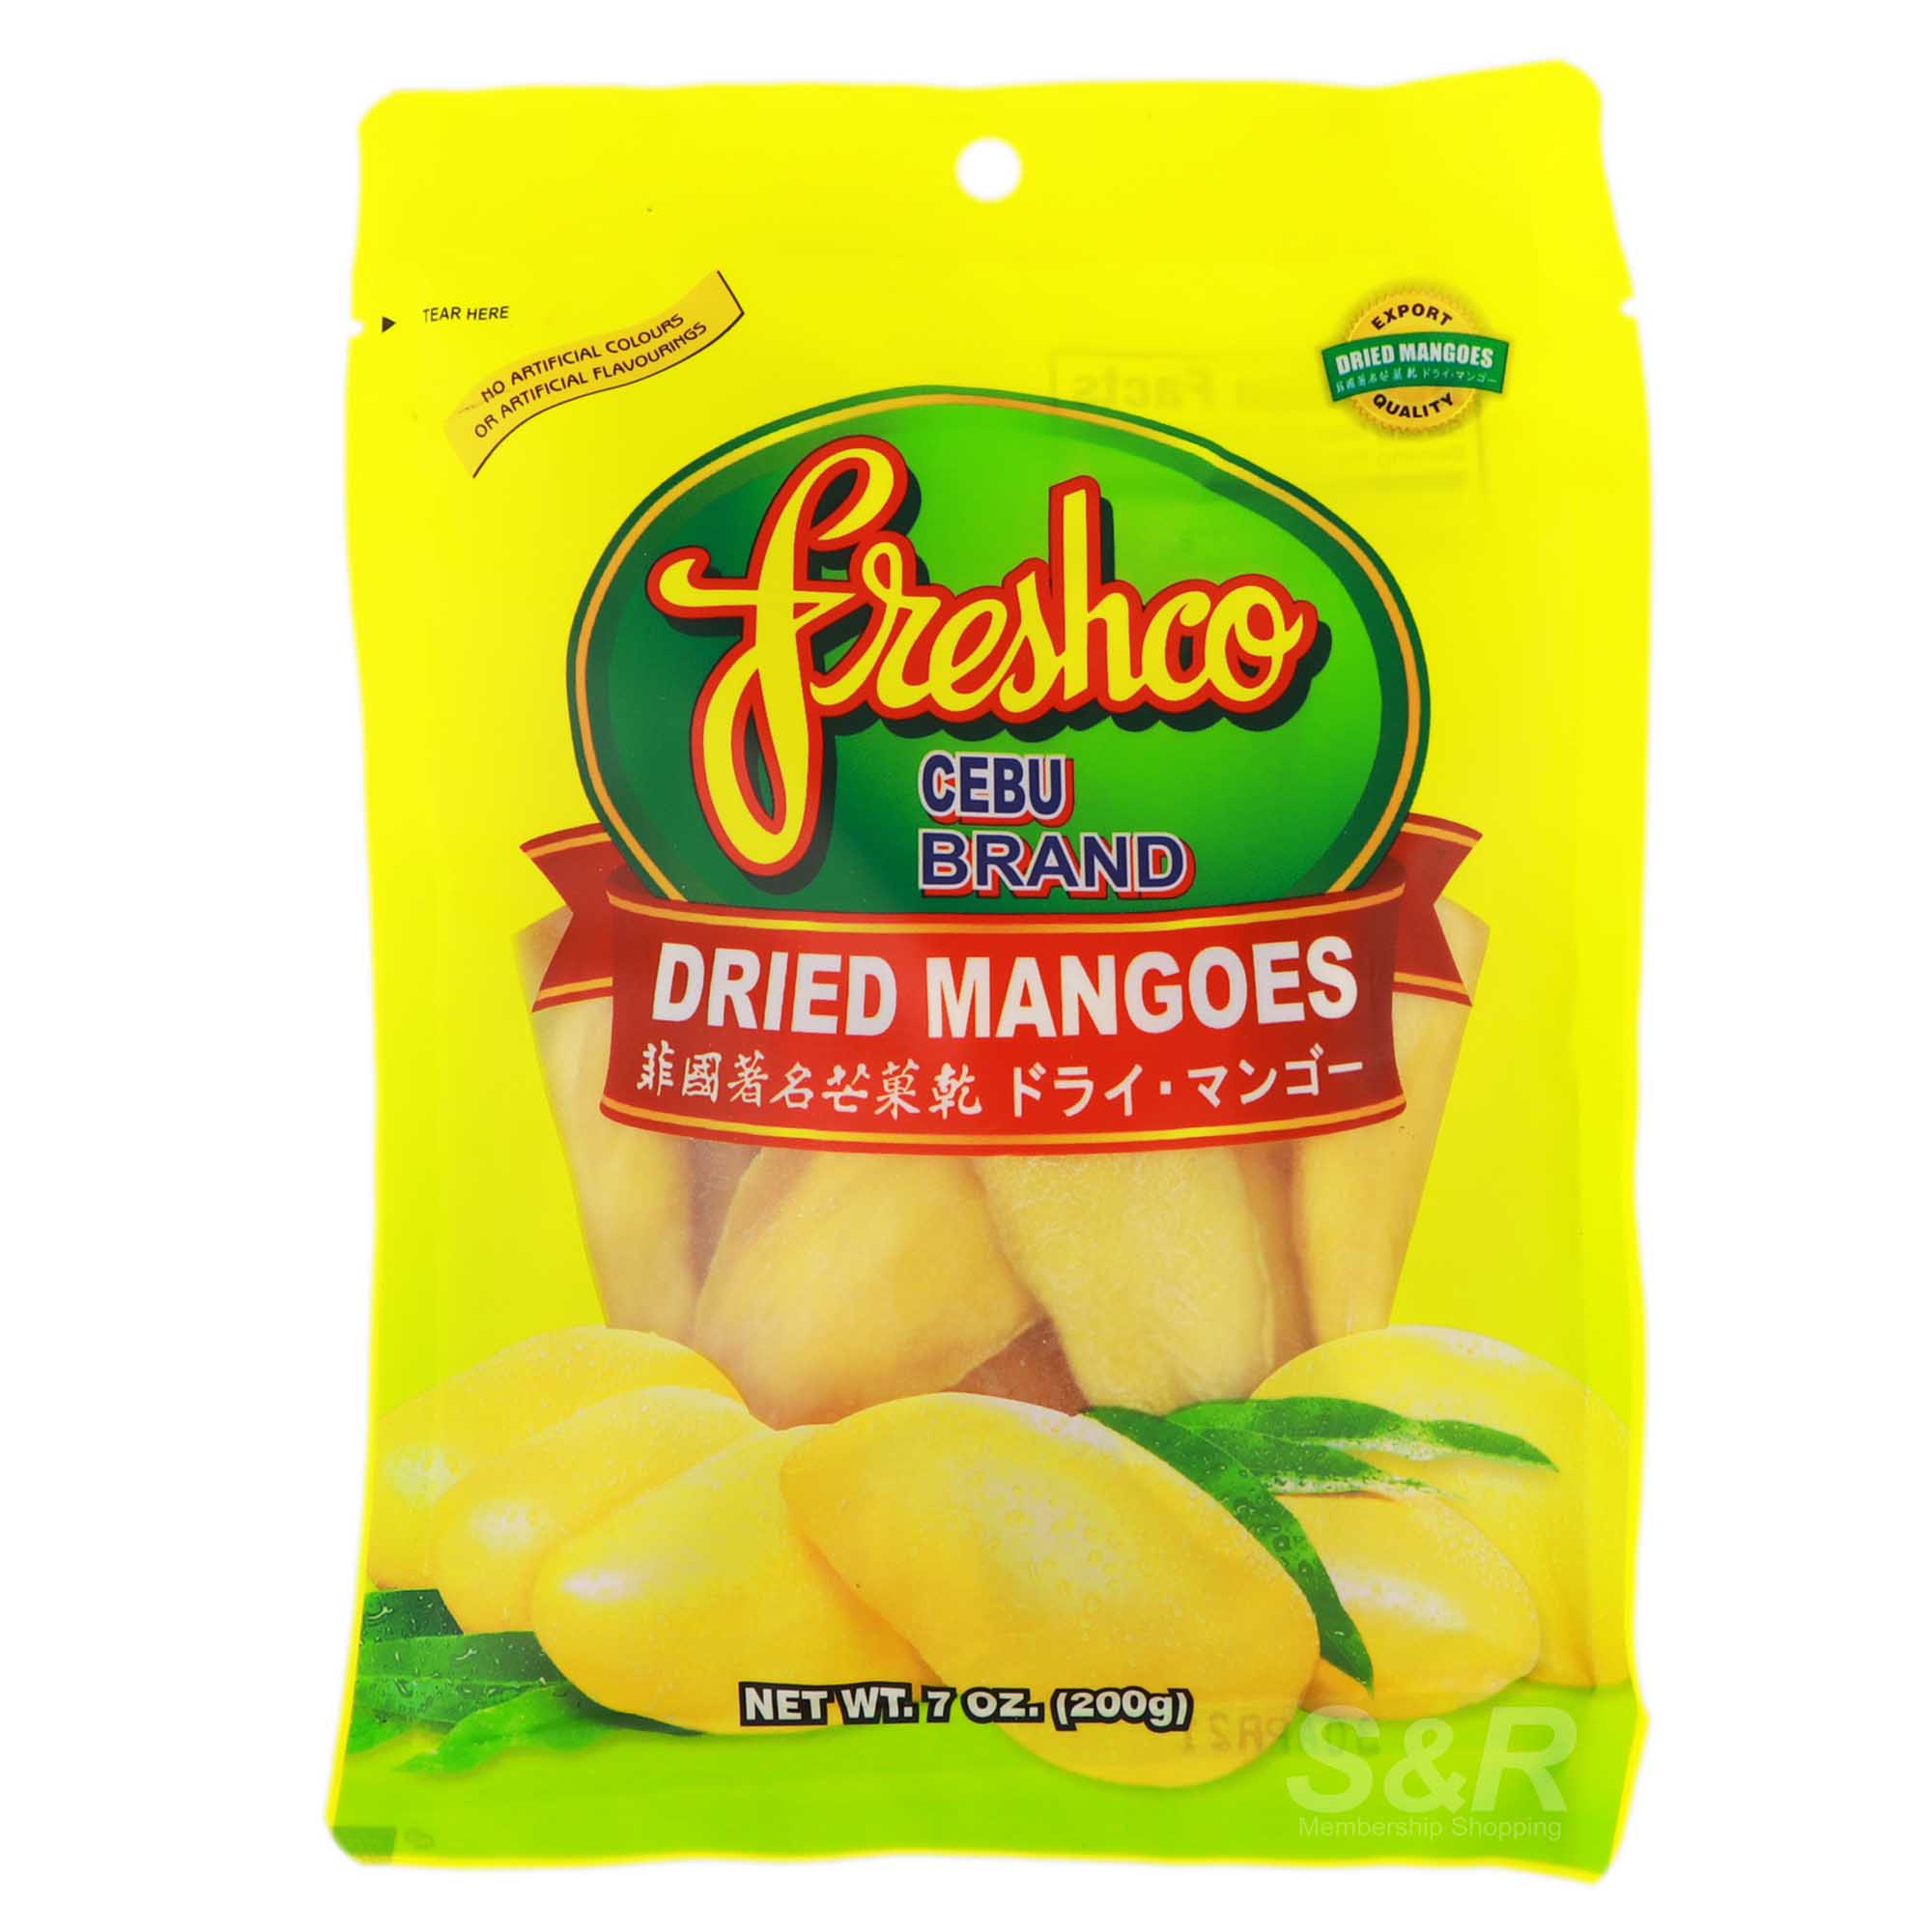 Freshco Dried Mangoes 200g